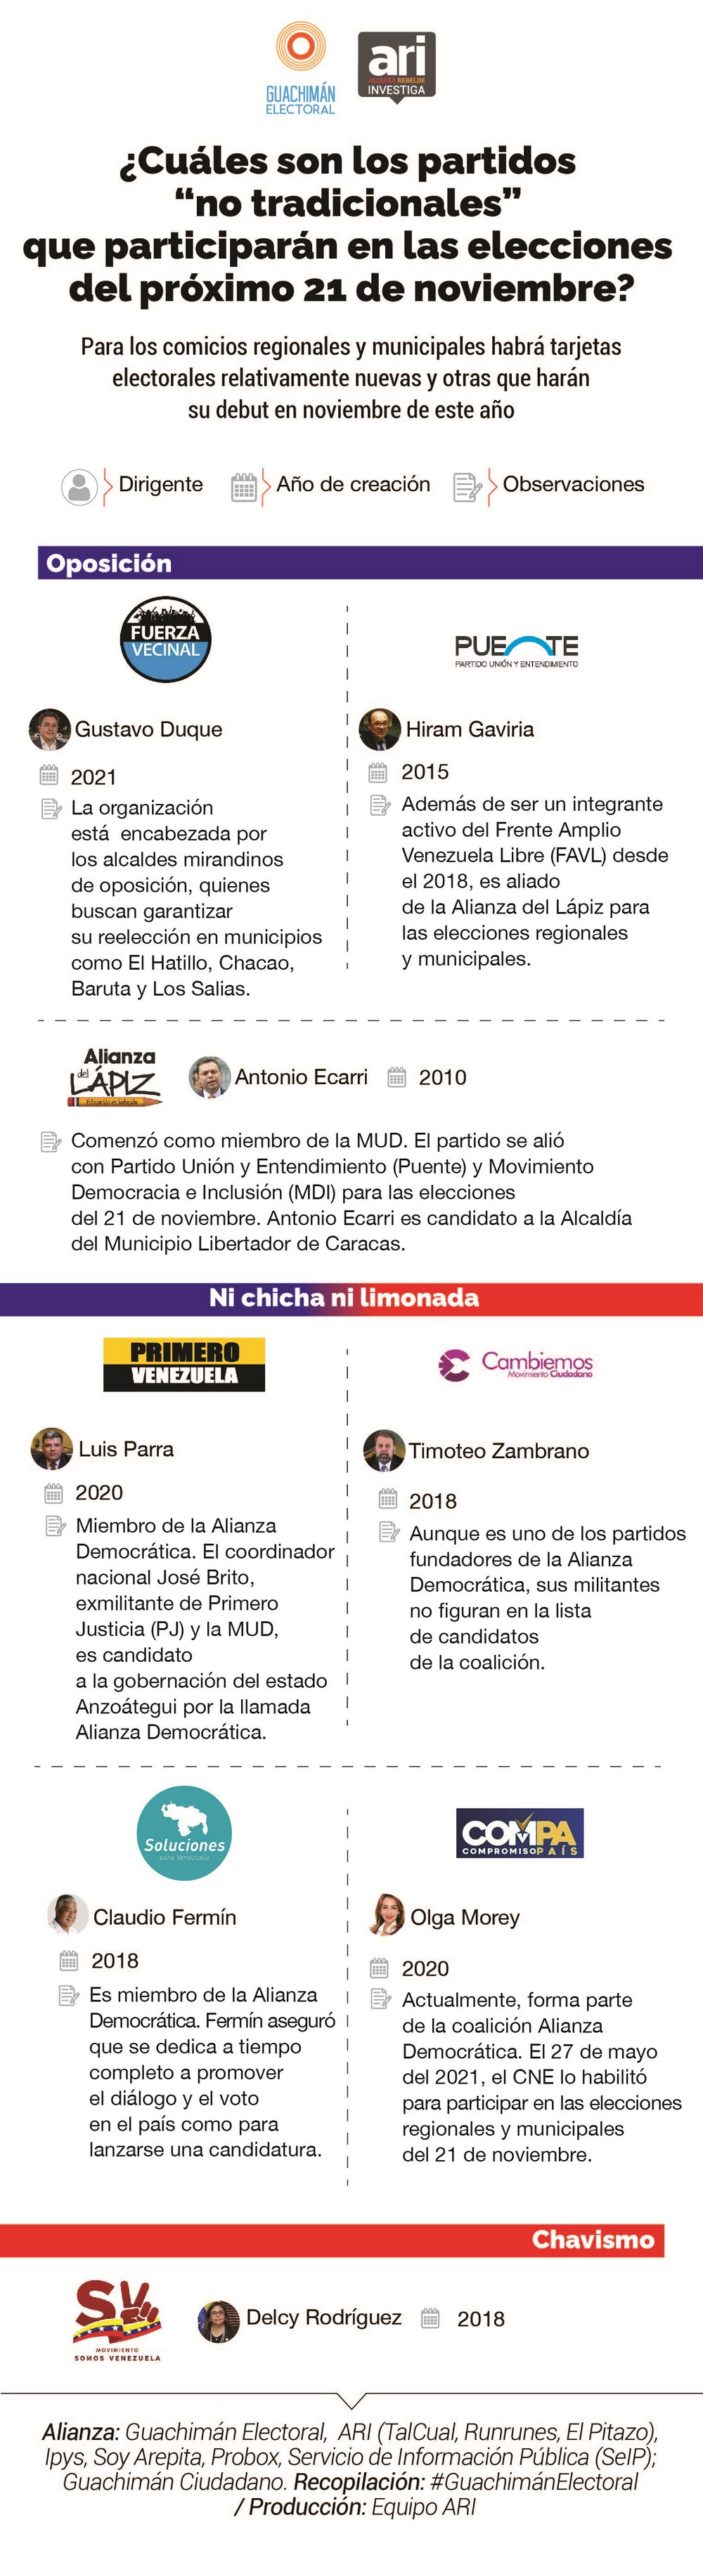 Infografía partidos políticos Guachimán